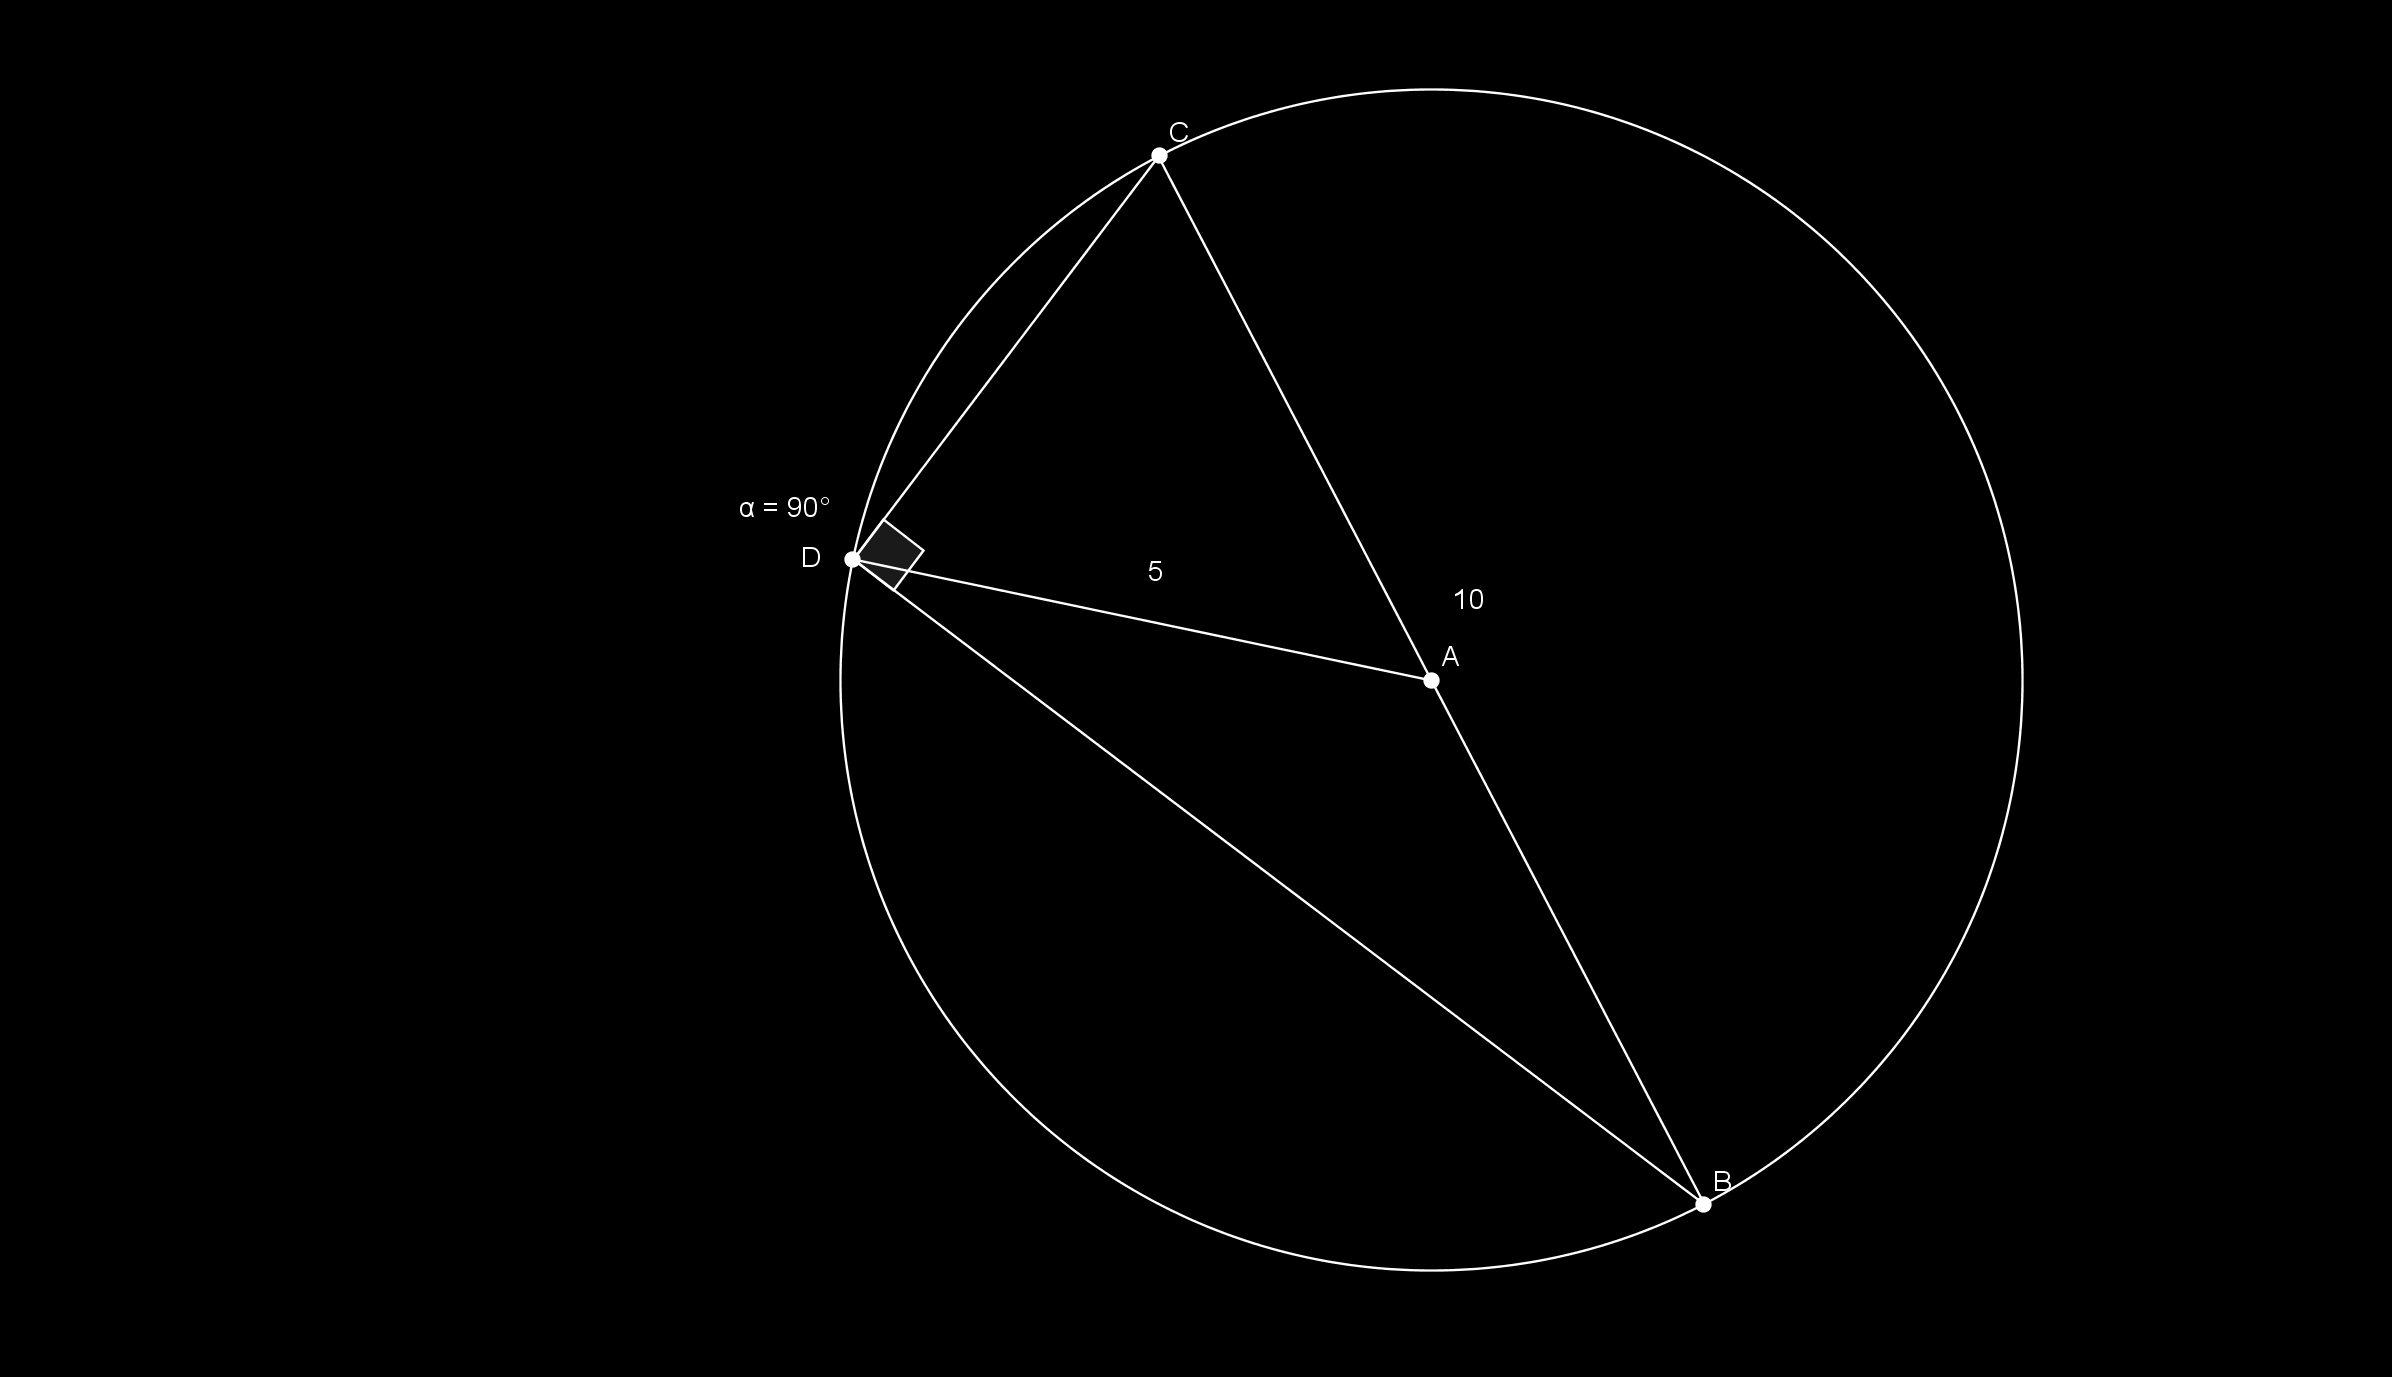 ogni angolo alla circonferenza che insiste su una semicirconferenza è un angolo retto.